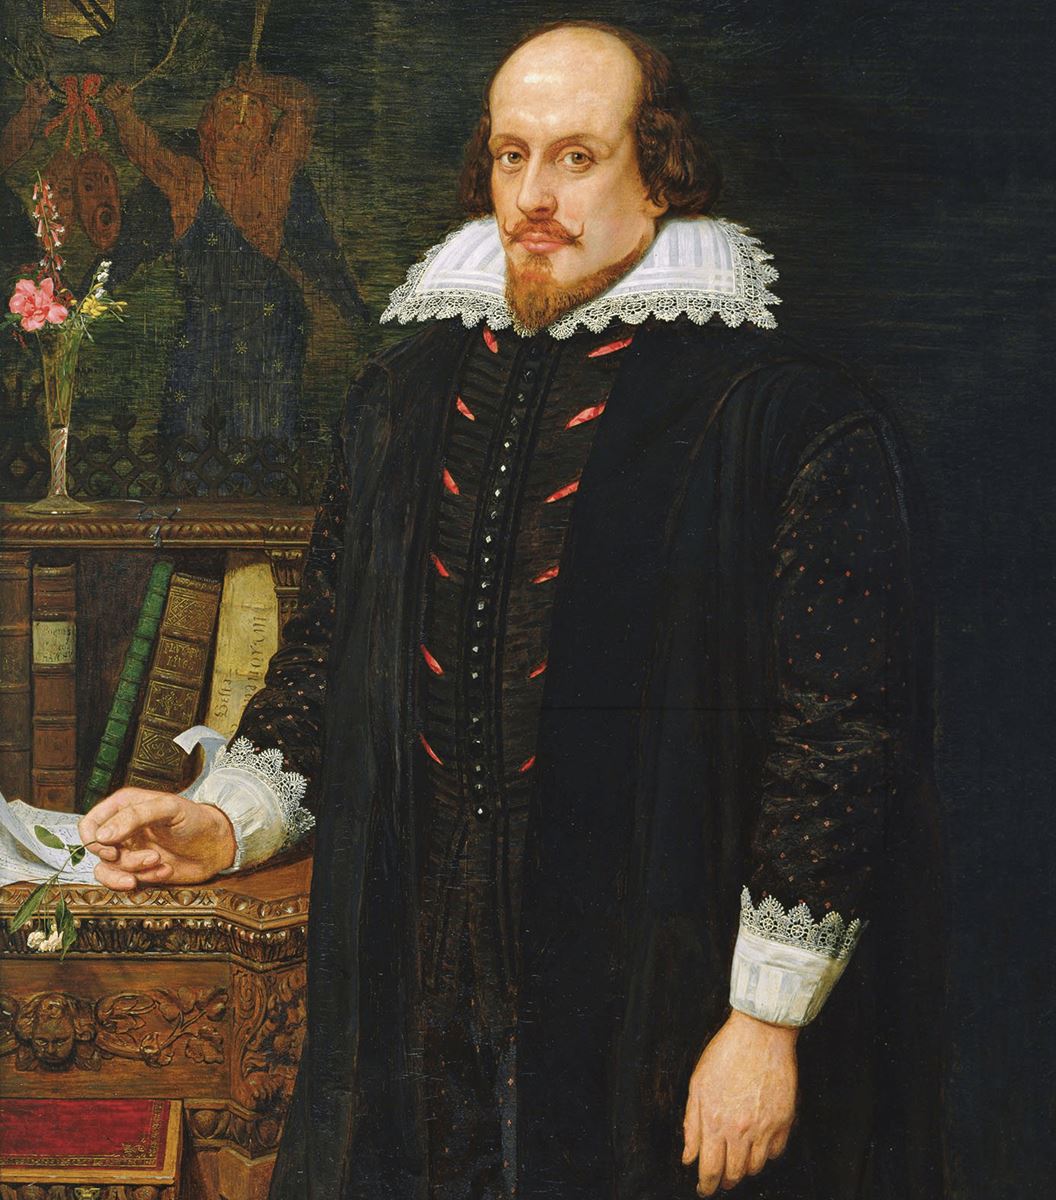 ウィリアム・シェイクスピア（1564～1616）の肖像画